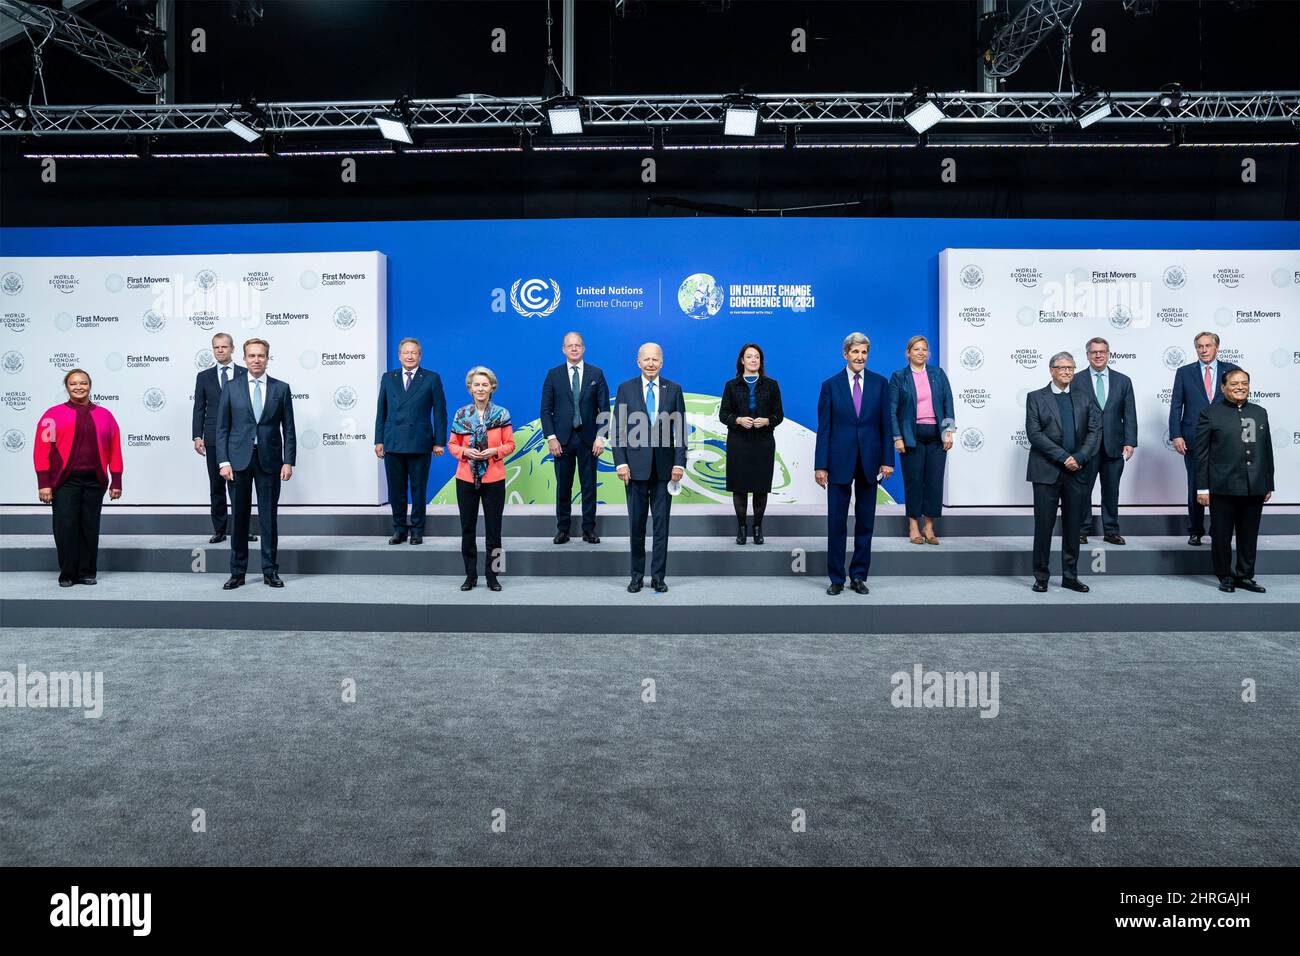 Il presidente degli Stati Uniti Joe Biden, centro, scatta una foto di gruppo con la prima coalizione Movers alla Conferenza sul cambiamento climatico delle Nazioni Unite del COP26 presso lo Scottish Event Campus, 2 novembre 2021 a Glasgow, Scozia. Foto Stock